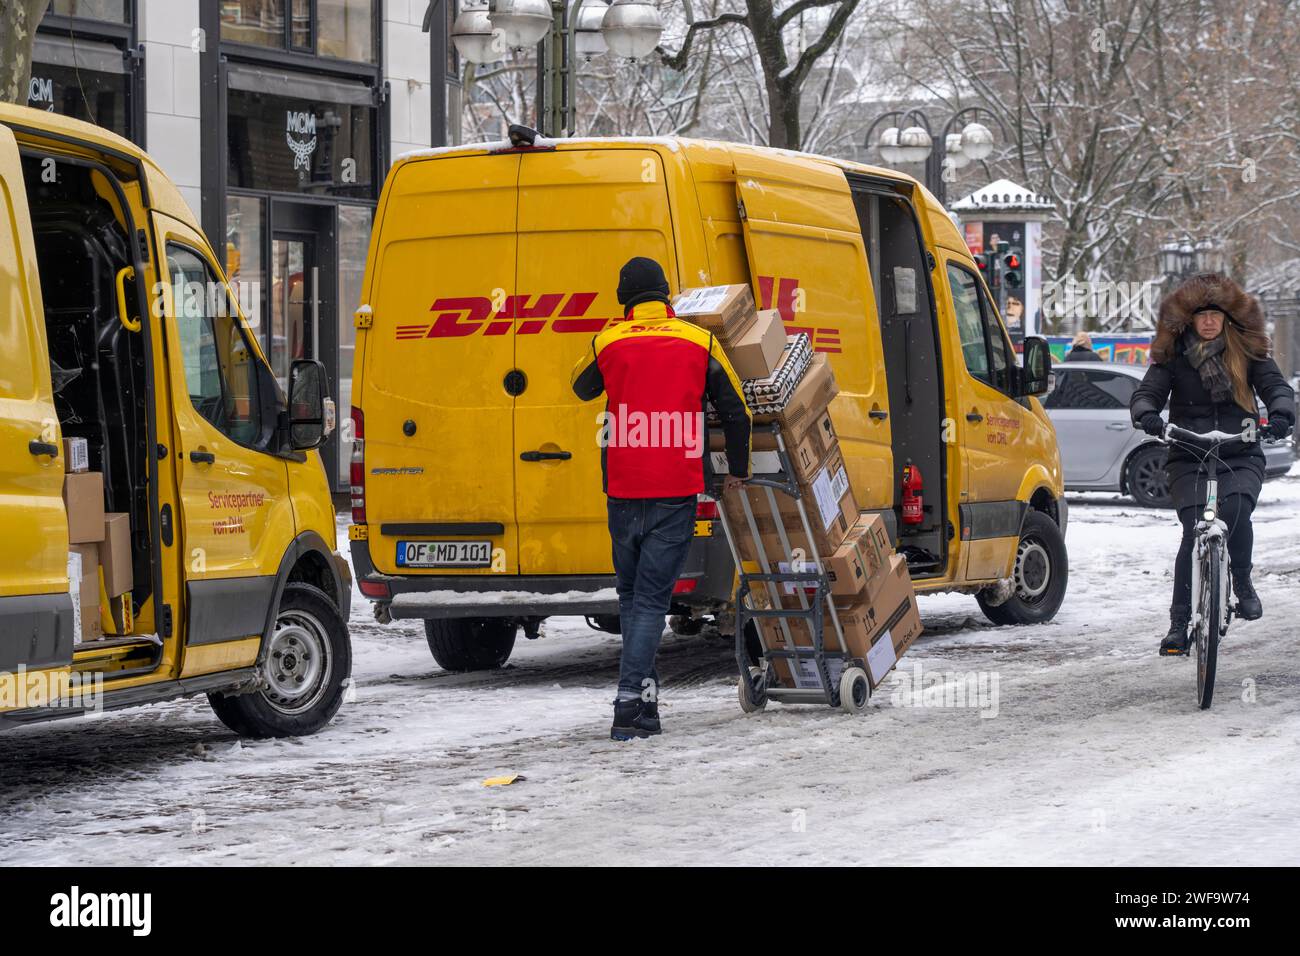 Hiver à Francfort, véhicules de livraison DHL, service de colis, dans le quartier bancaire, Hesse, Allemagne Banque D'Images